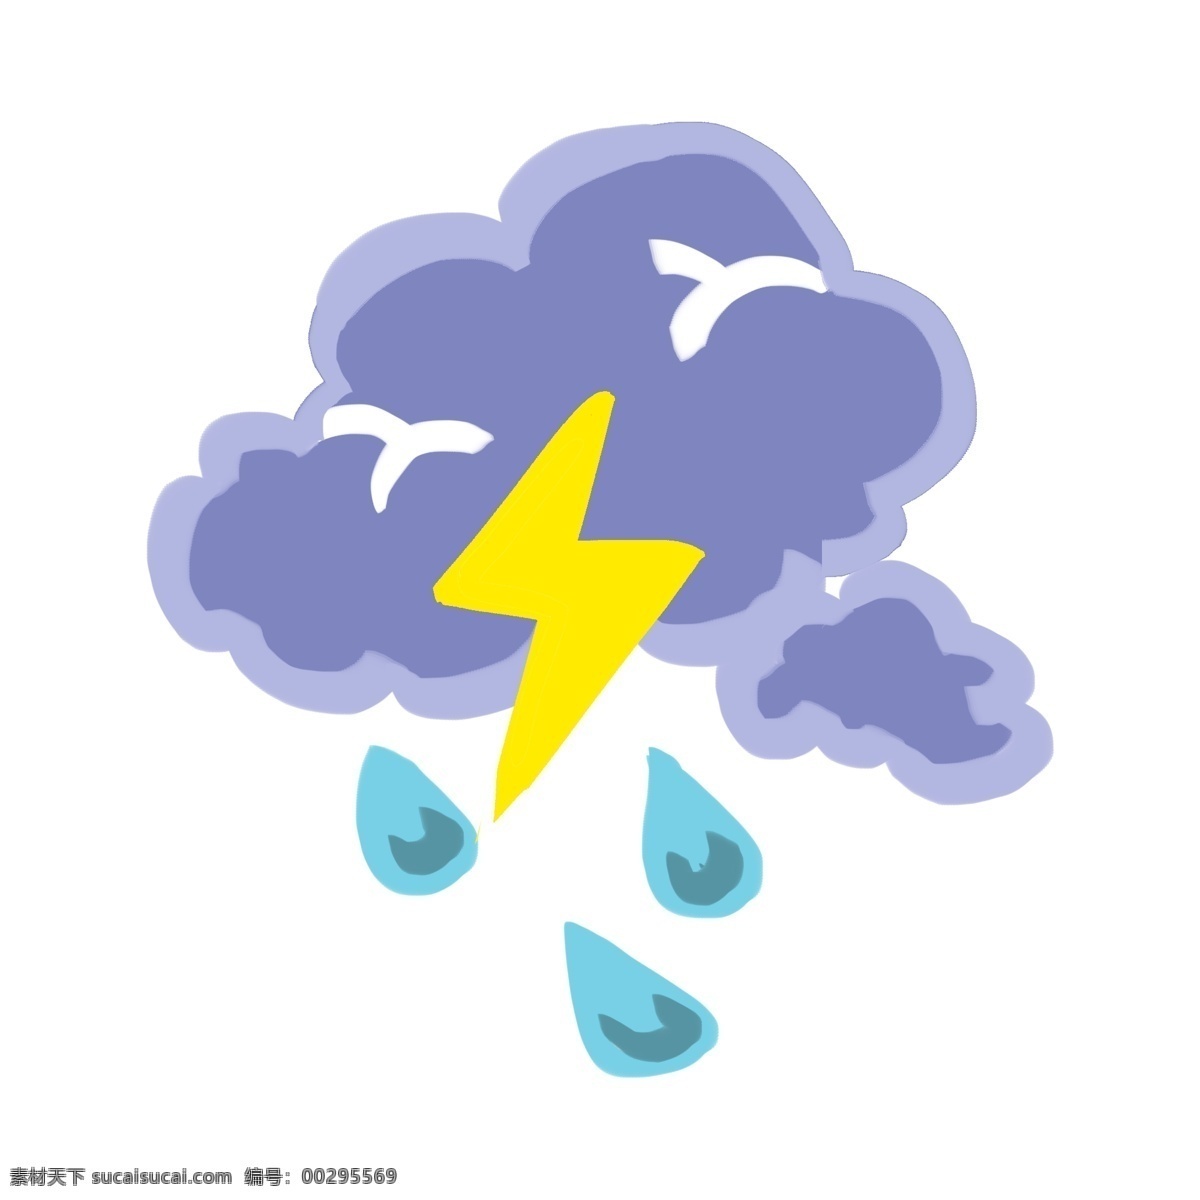 雷阵雨 天气 插画 雷阵雨天气 卡通插画 天气图标 天气插画 气象 打雷 闪电 云朵 雨滴